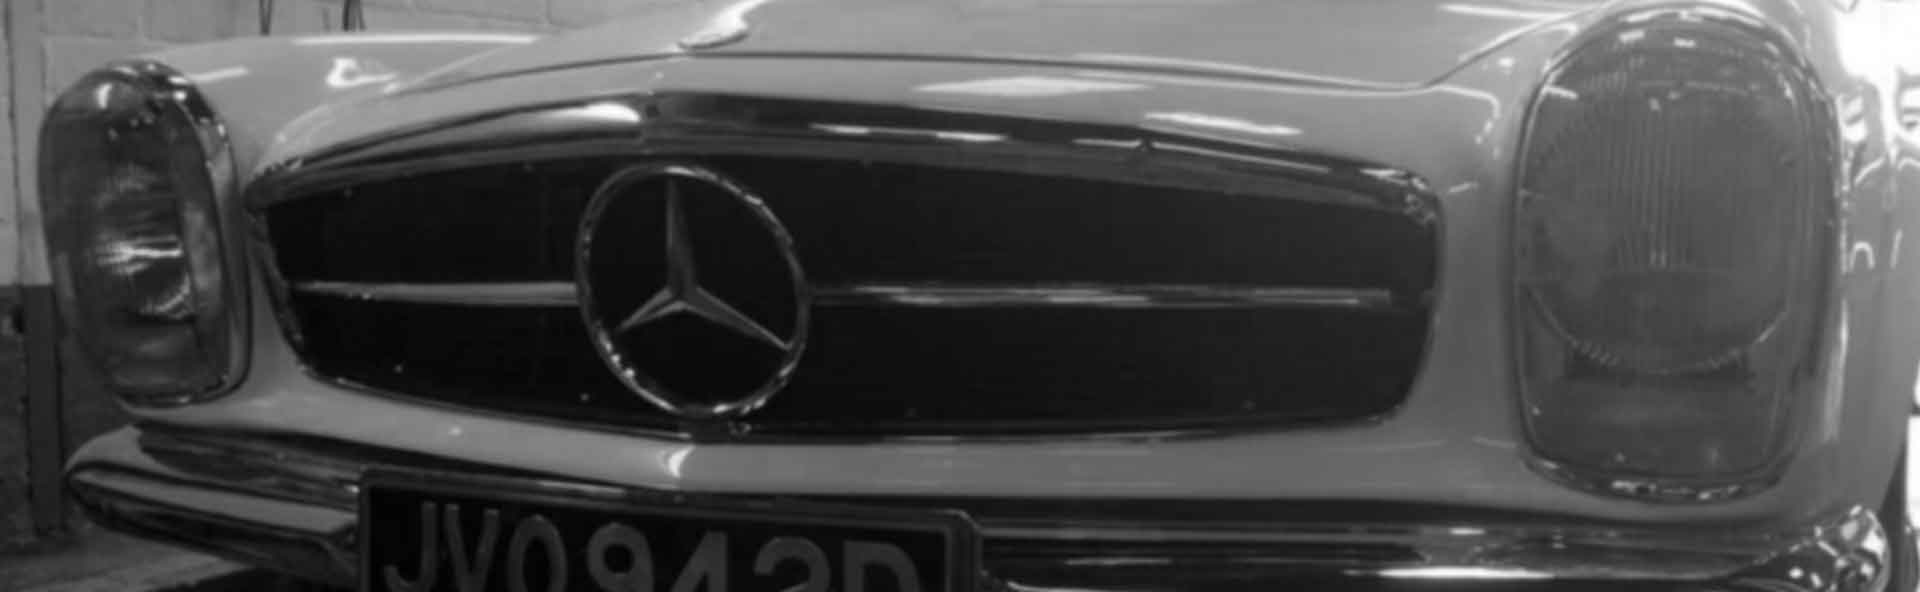 Mercedes at SS Motors In Weybridge Surrey Image 1